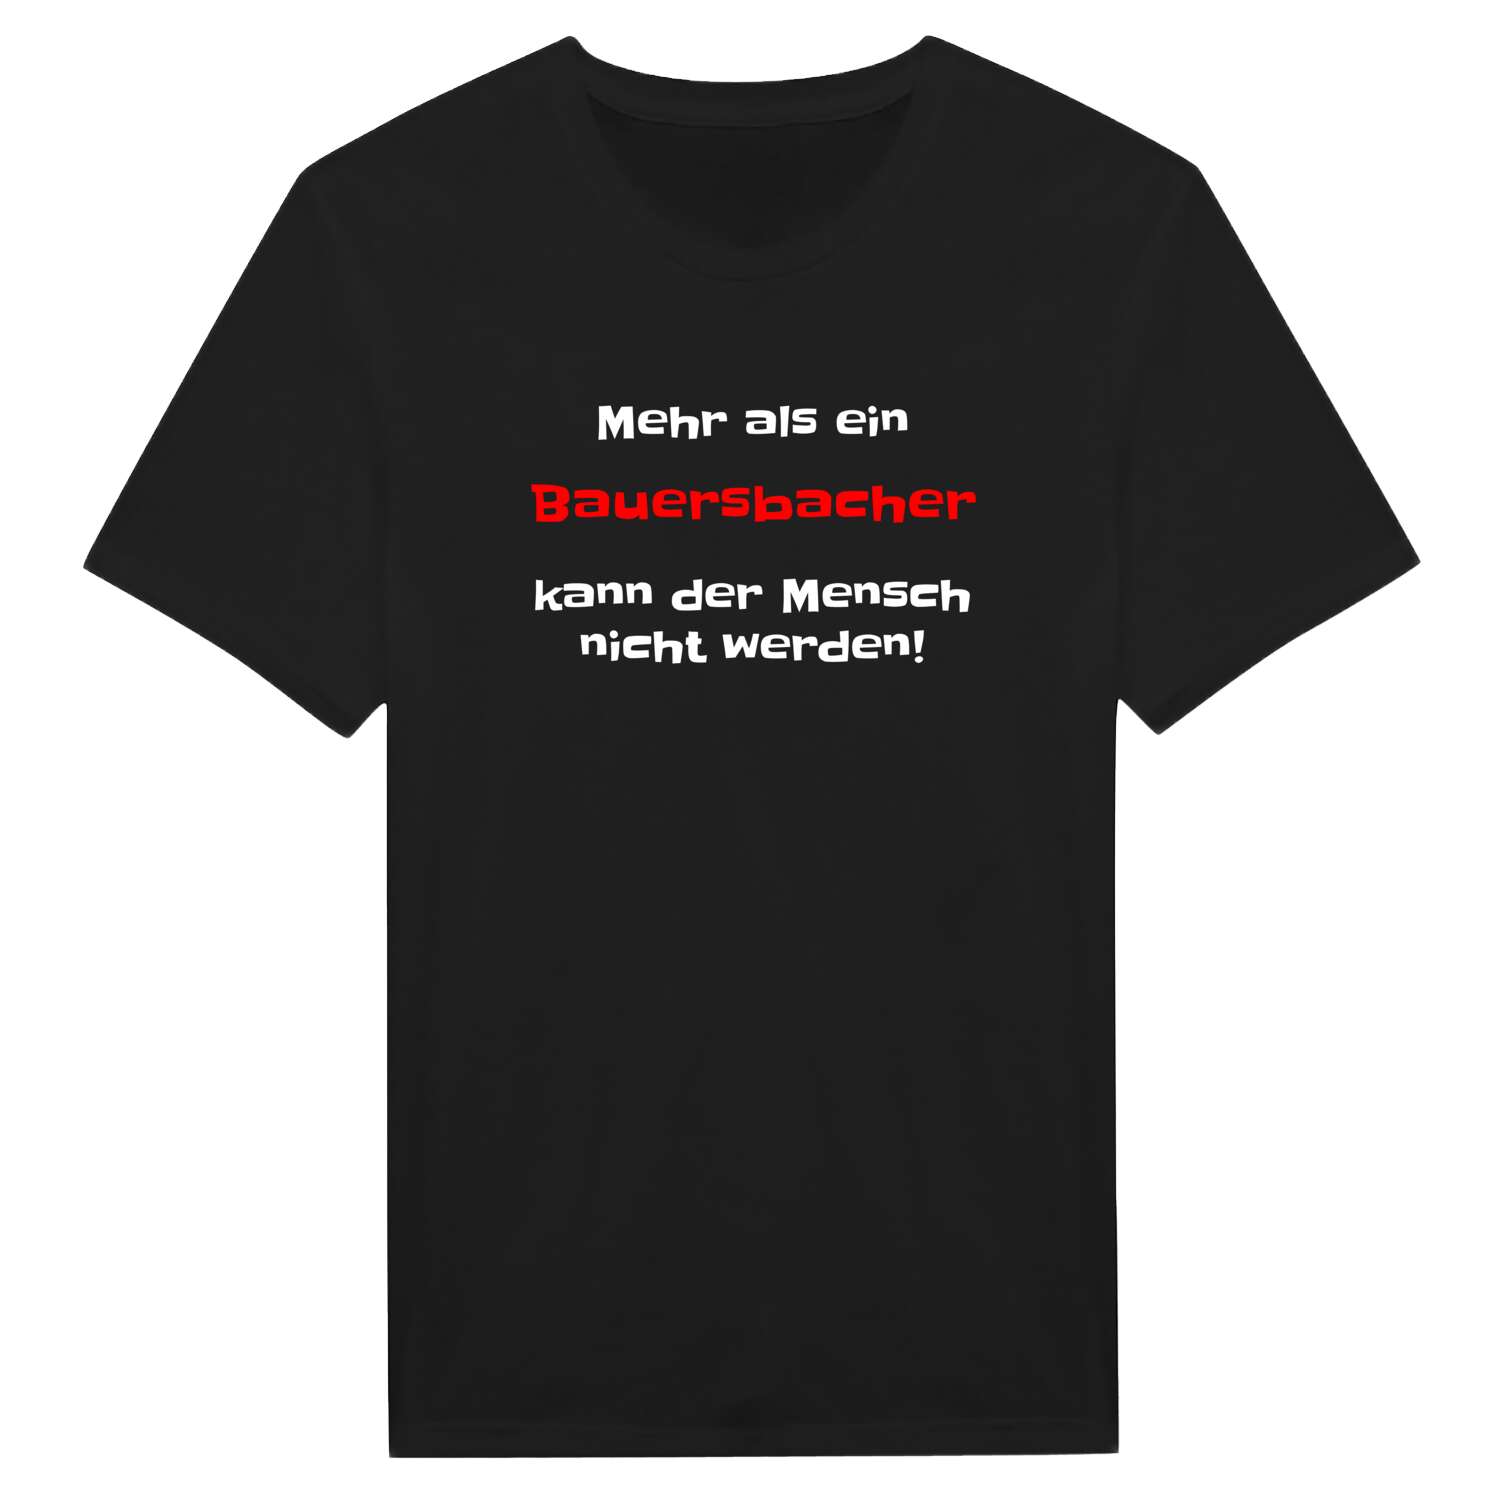 Bauersbach T-Shirt »Mehr als ein«